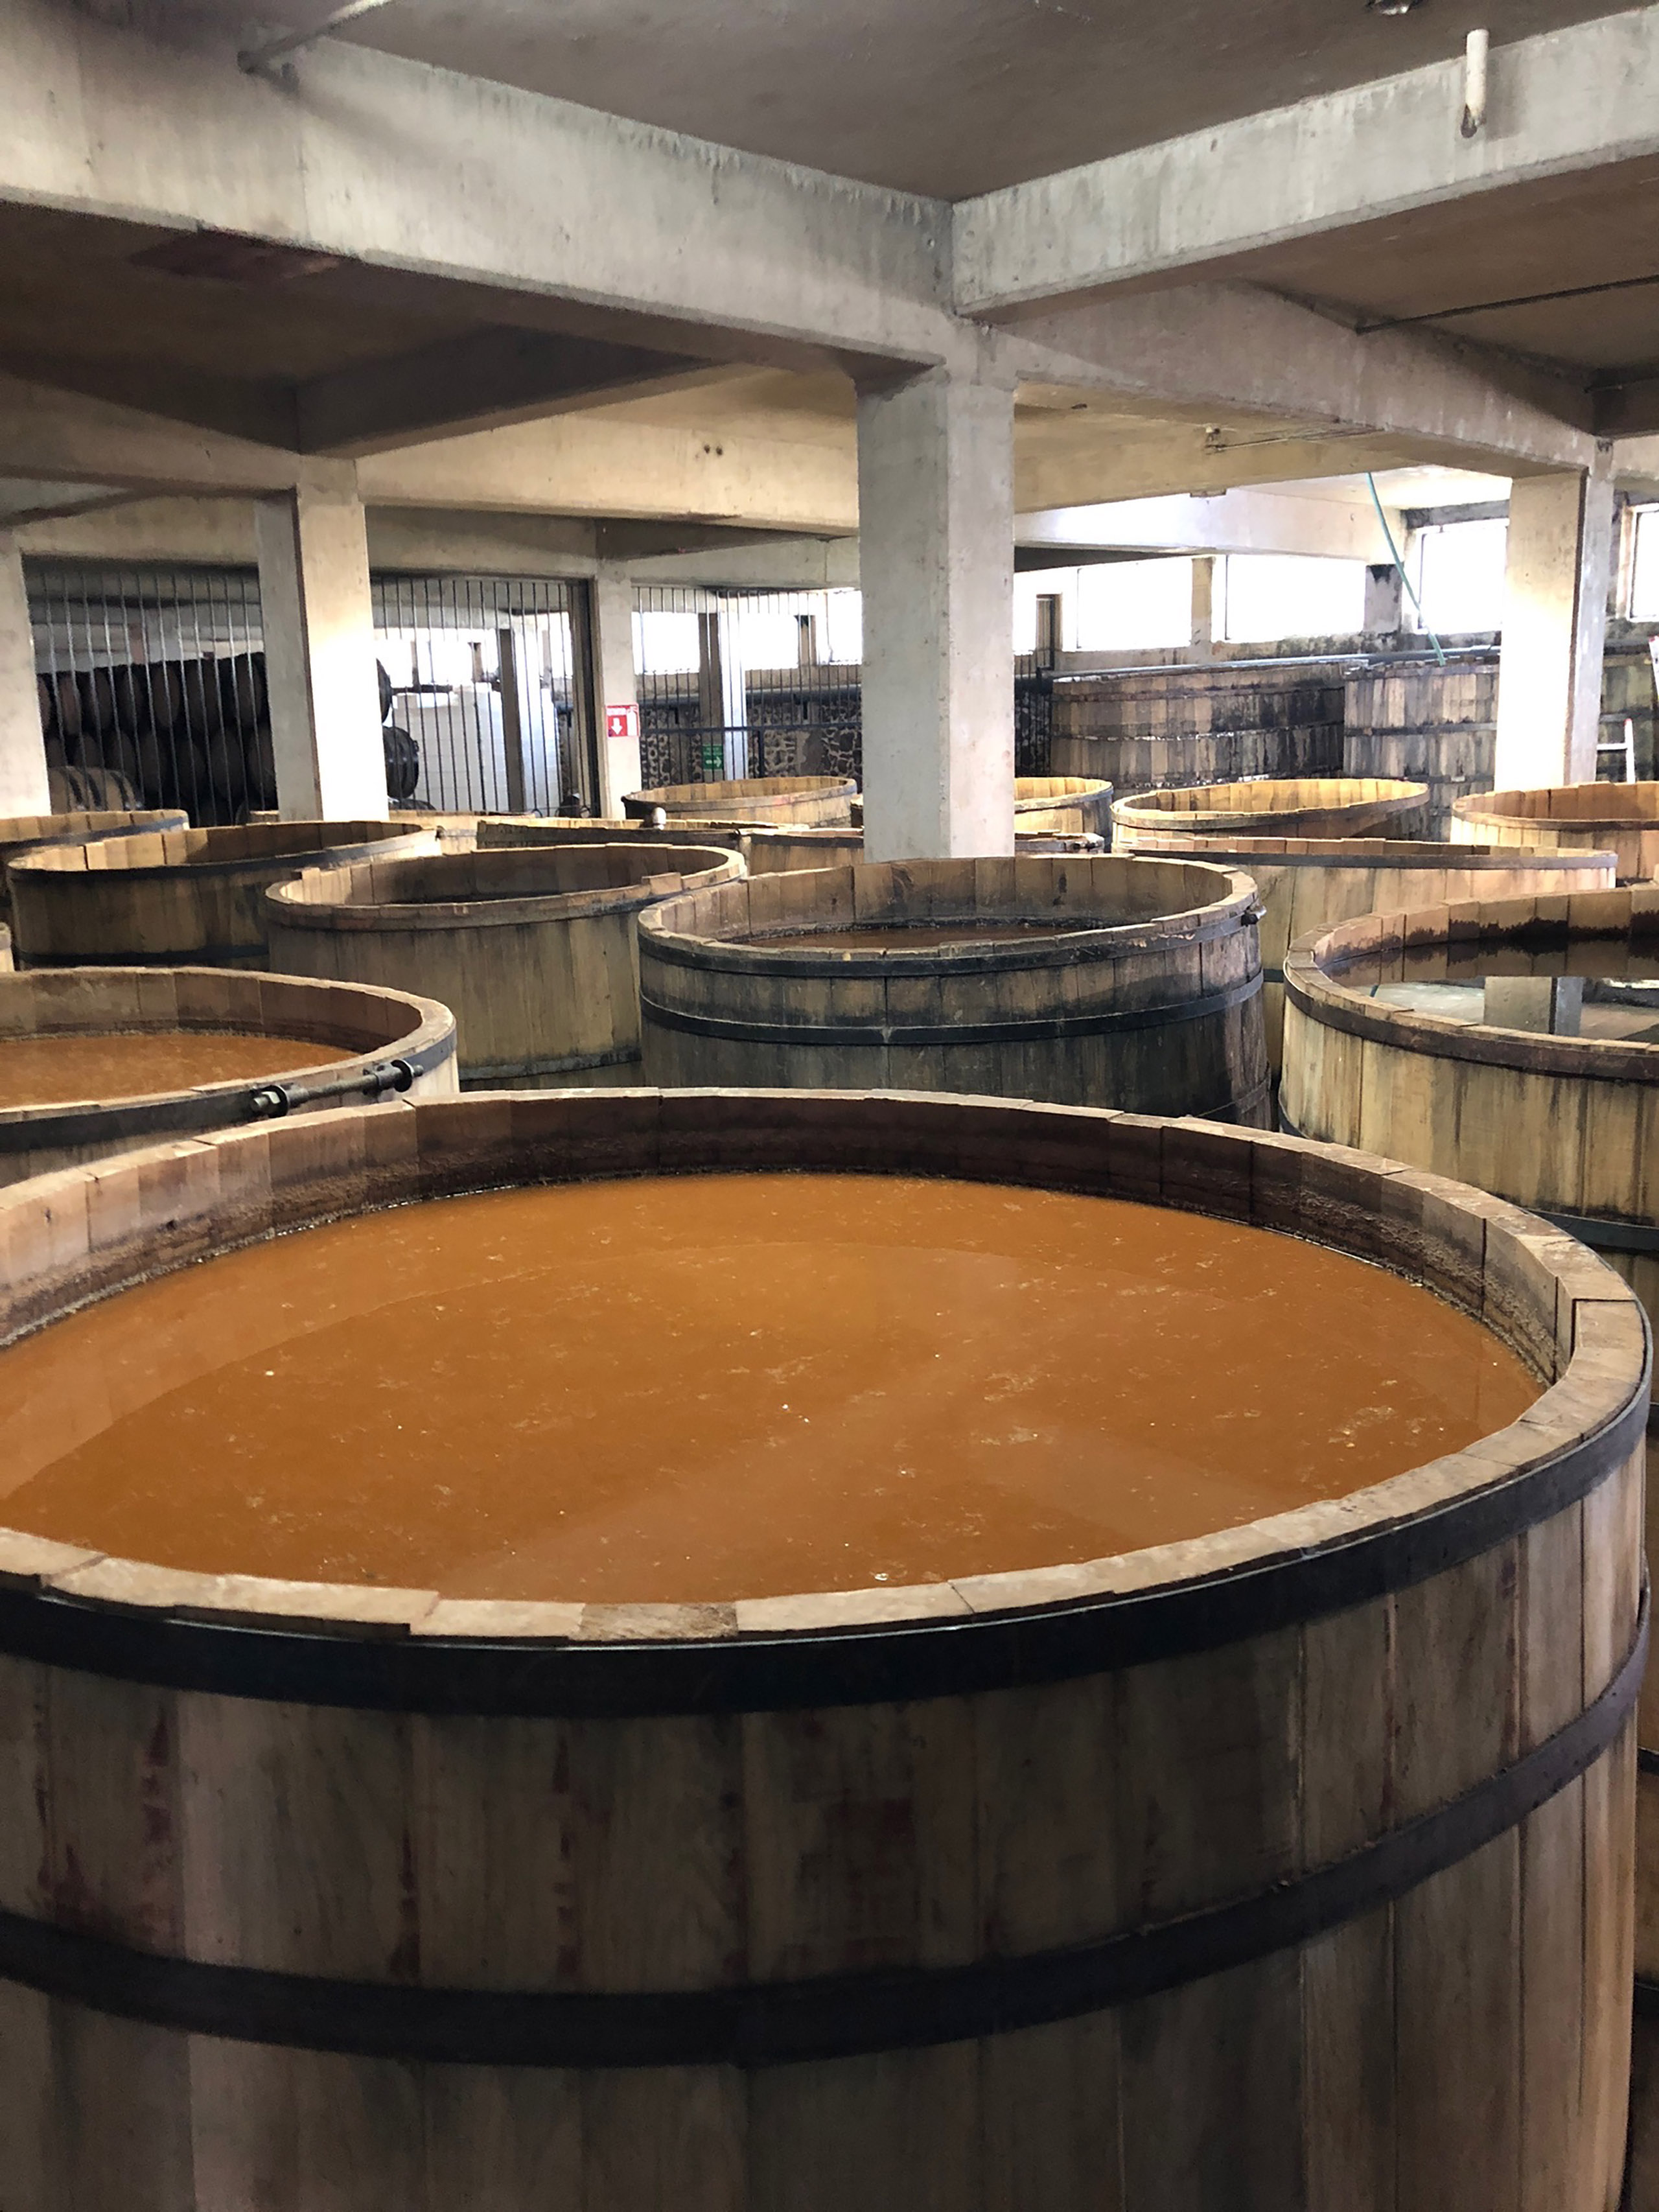 barrels of El Tesoro Tequila fermenting